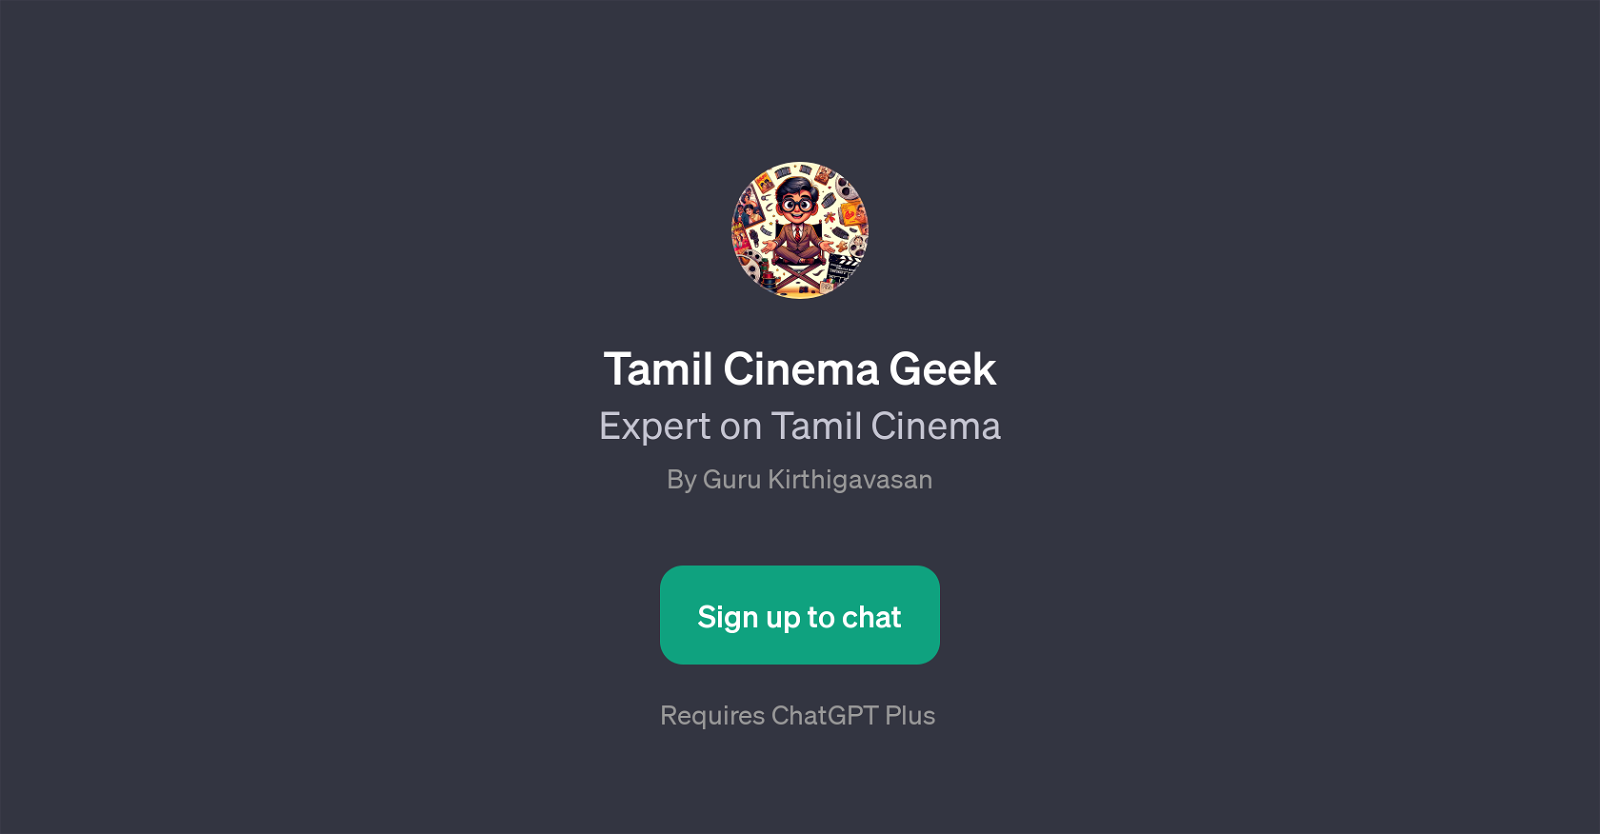 Tamil Cinema Geek website